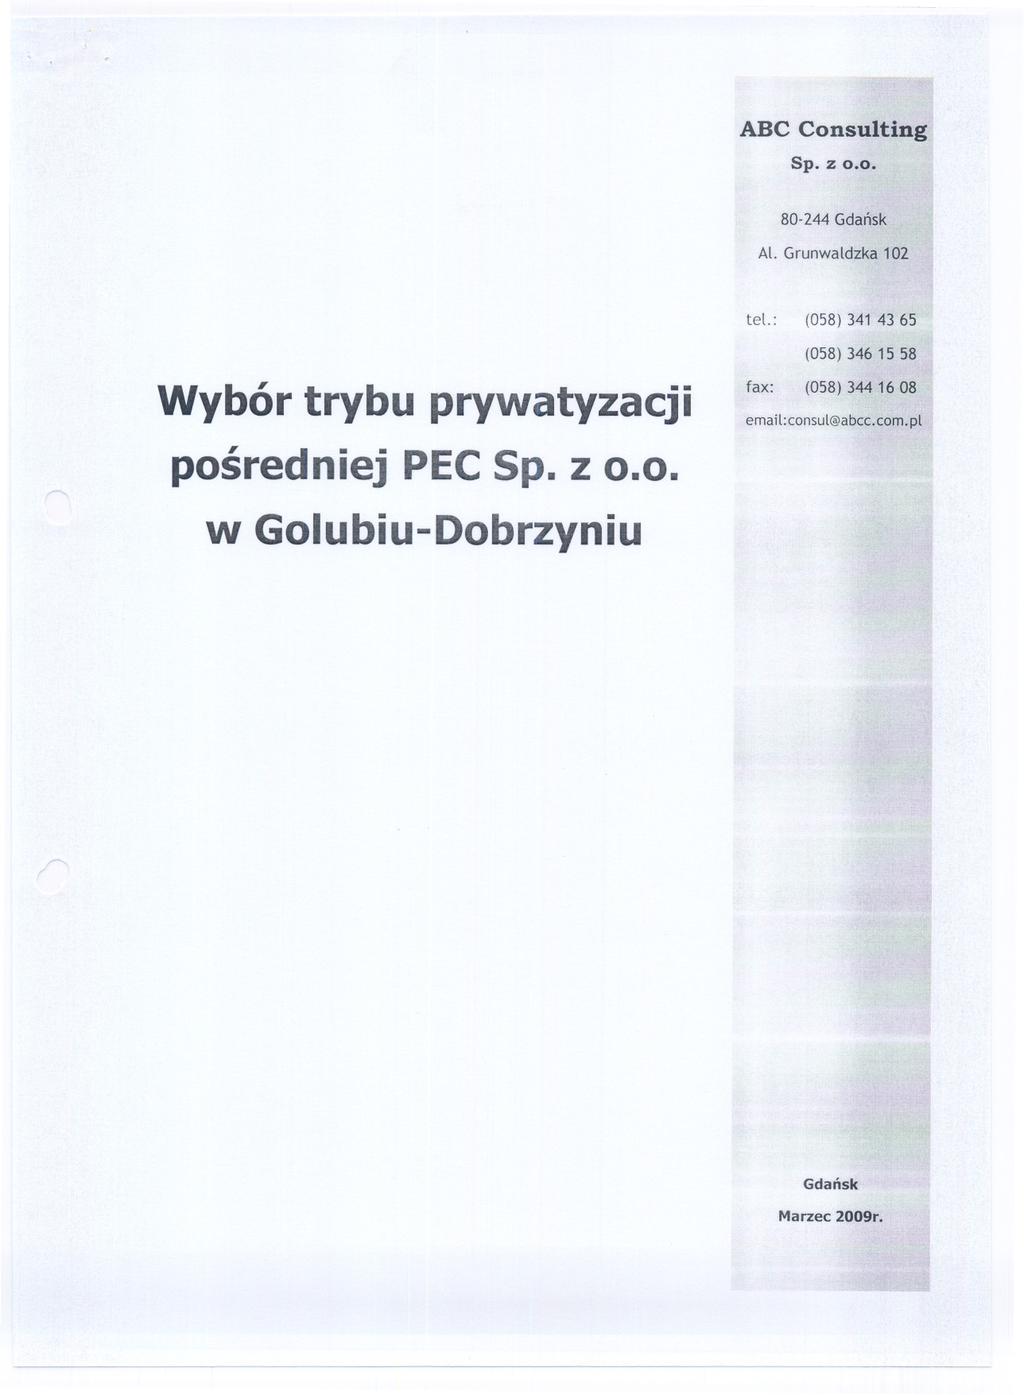 ABC Consulting sp. z 0.0. 80-244 Gdansk Al. Grunwaldzka 102 tel.: (058) 34143 65 Wybór trybu prywatyzacji posredniej PECSp.